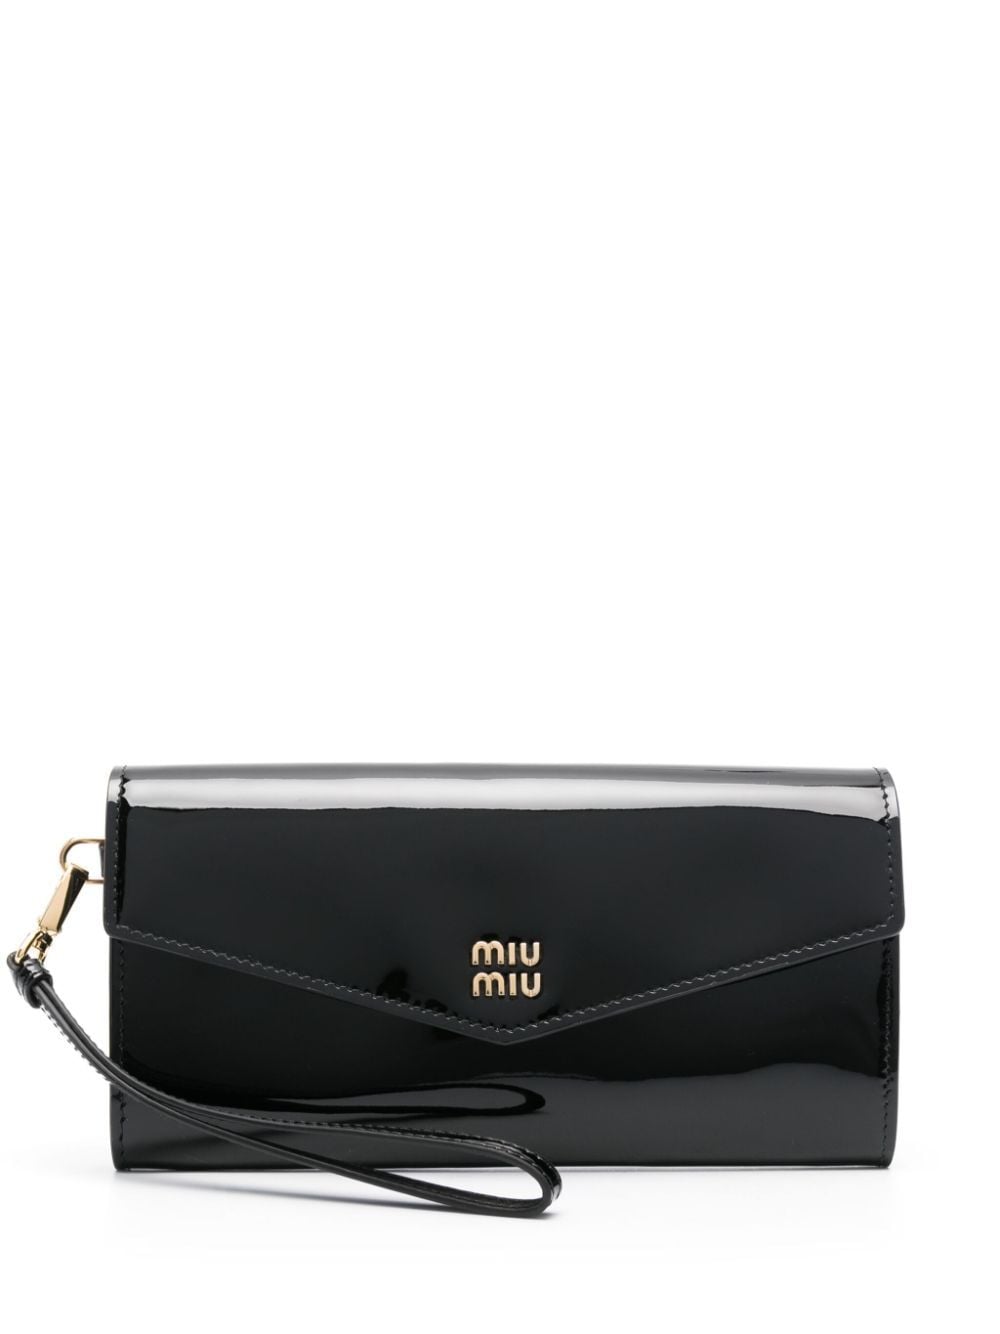 Miu Miu Logo-plaque Leather Wallet In Black